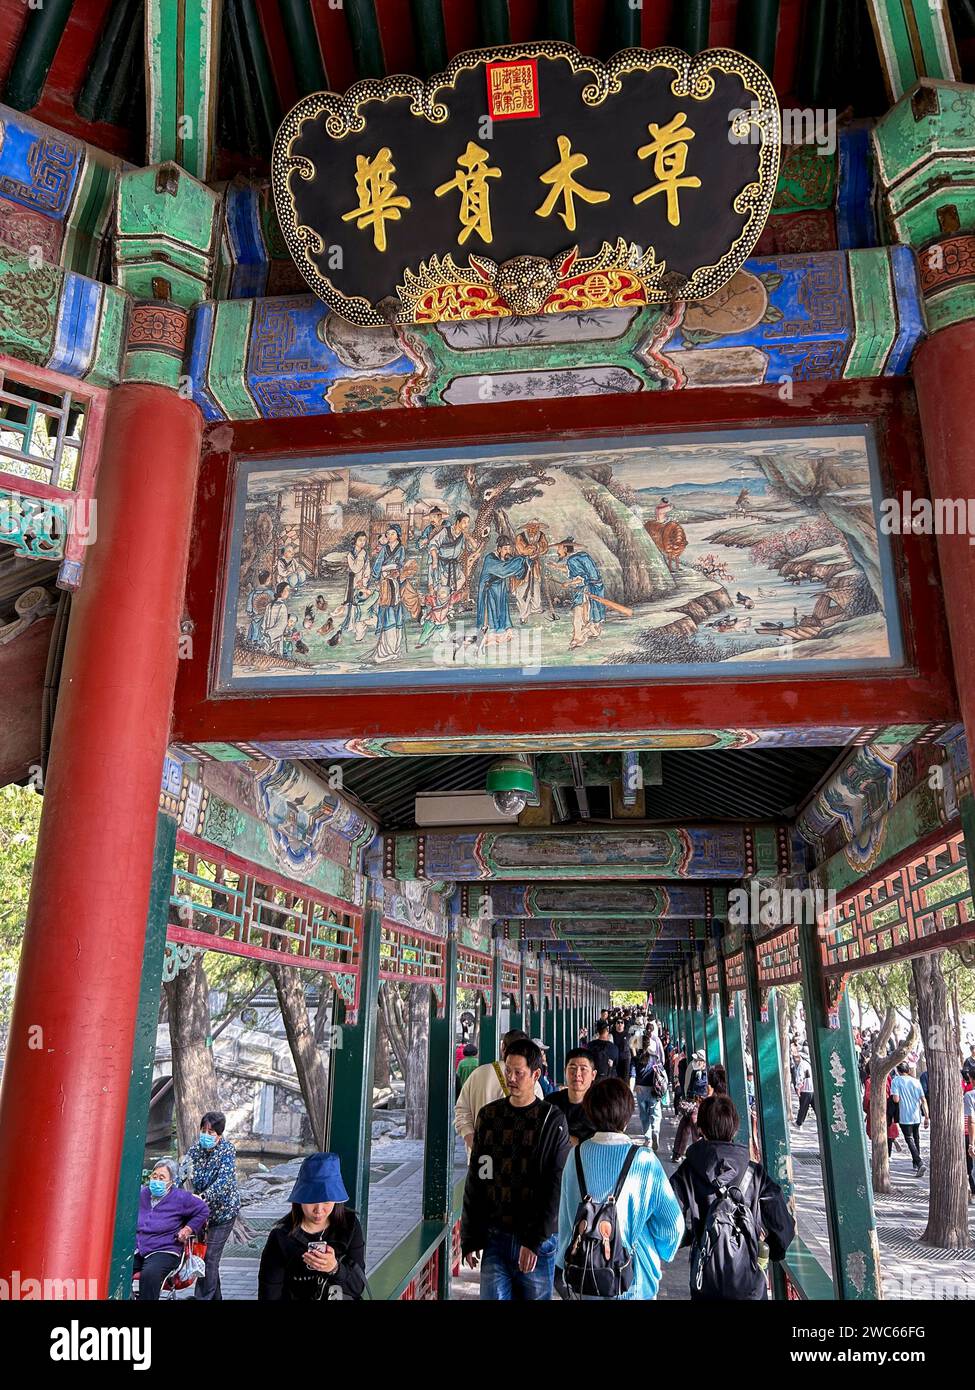 Pechino, Cina, grande folla in visita, turisti cinesi, Monumento storico, dettaglio architettonico del 'Palazzo d'Estate', passerella all'aperto Foto Stock